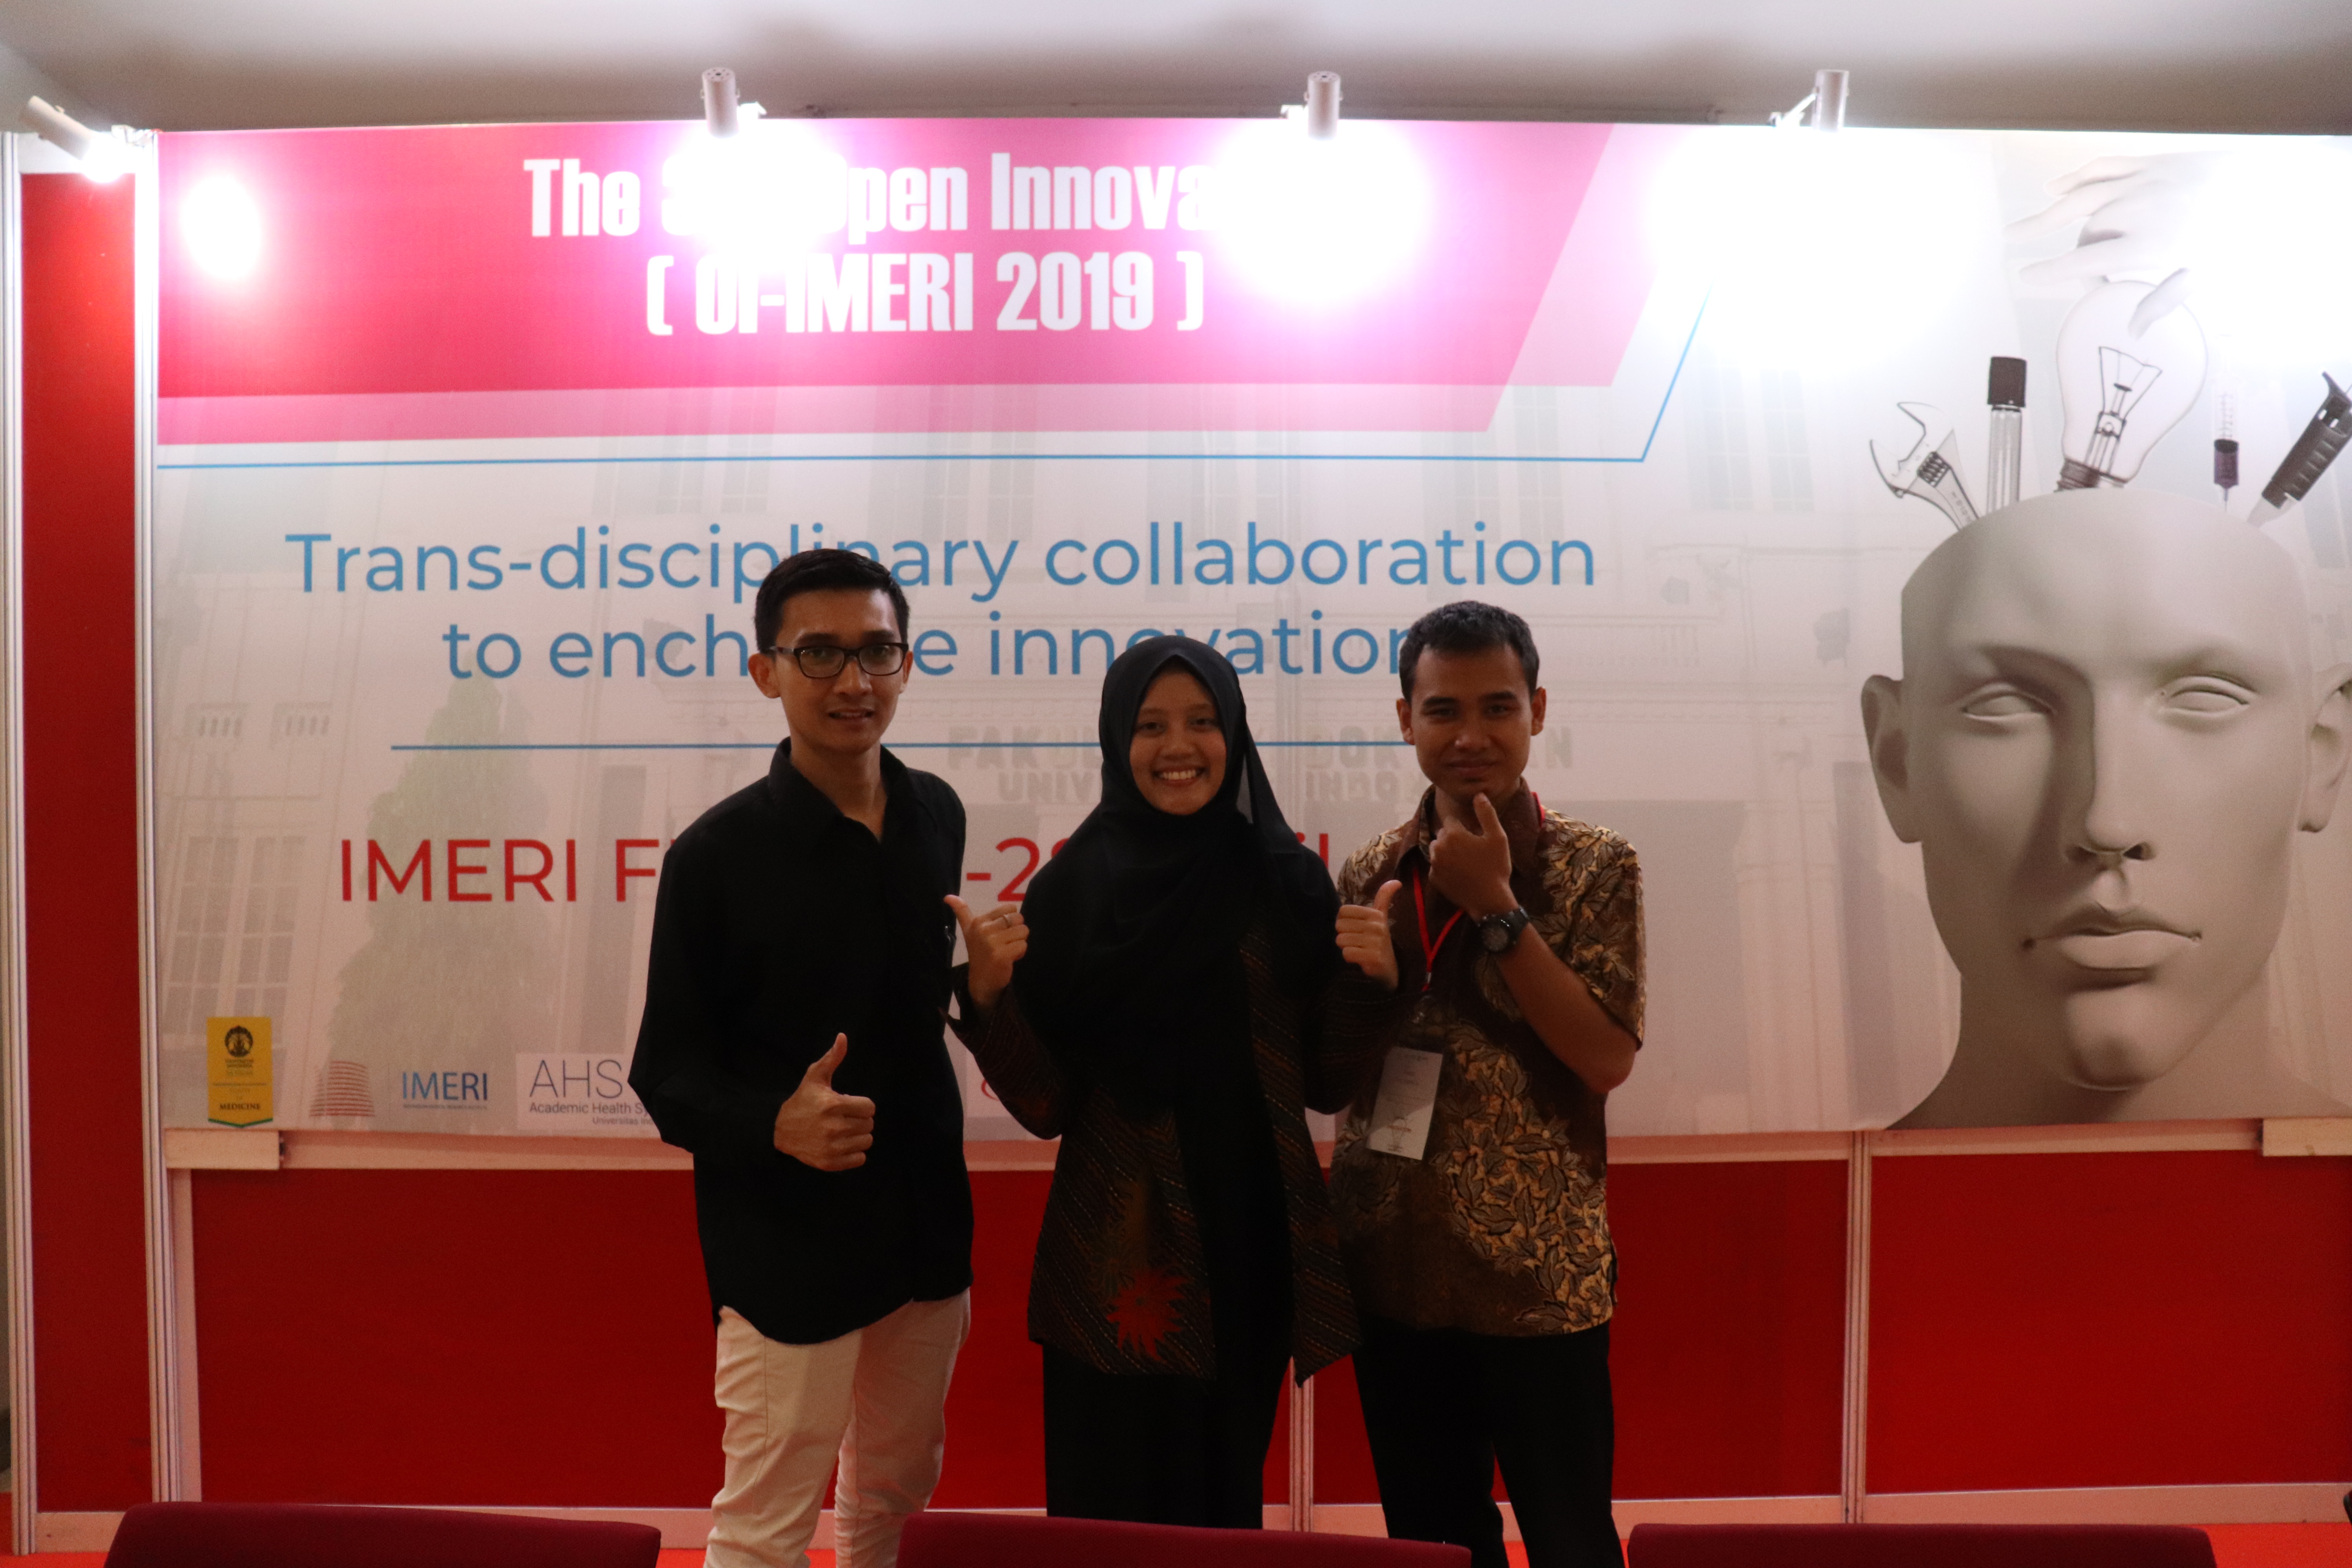 Foto Open Innovation IMERI Fakultas Kedokteran, Universitas Indonesia